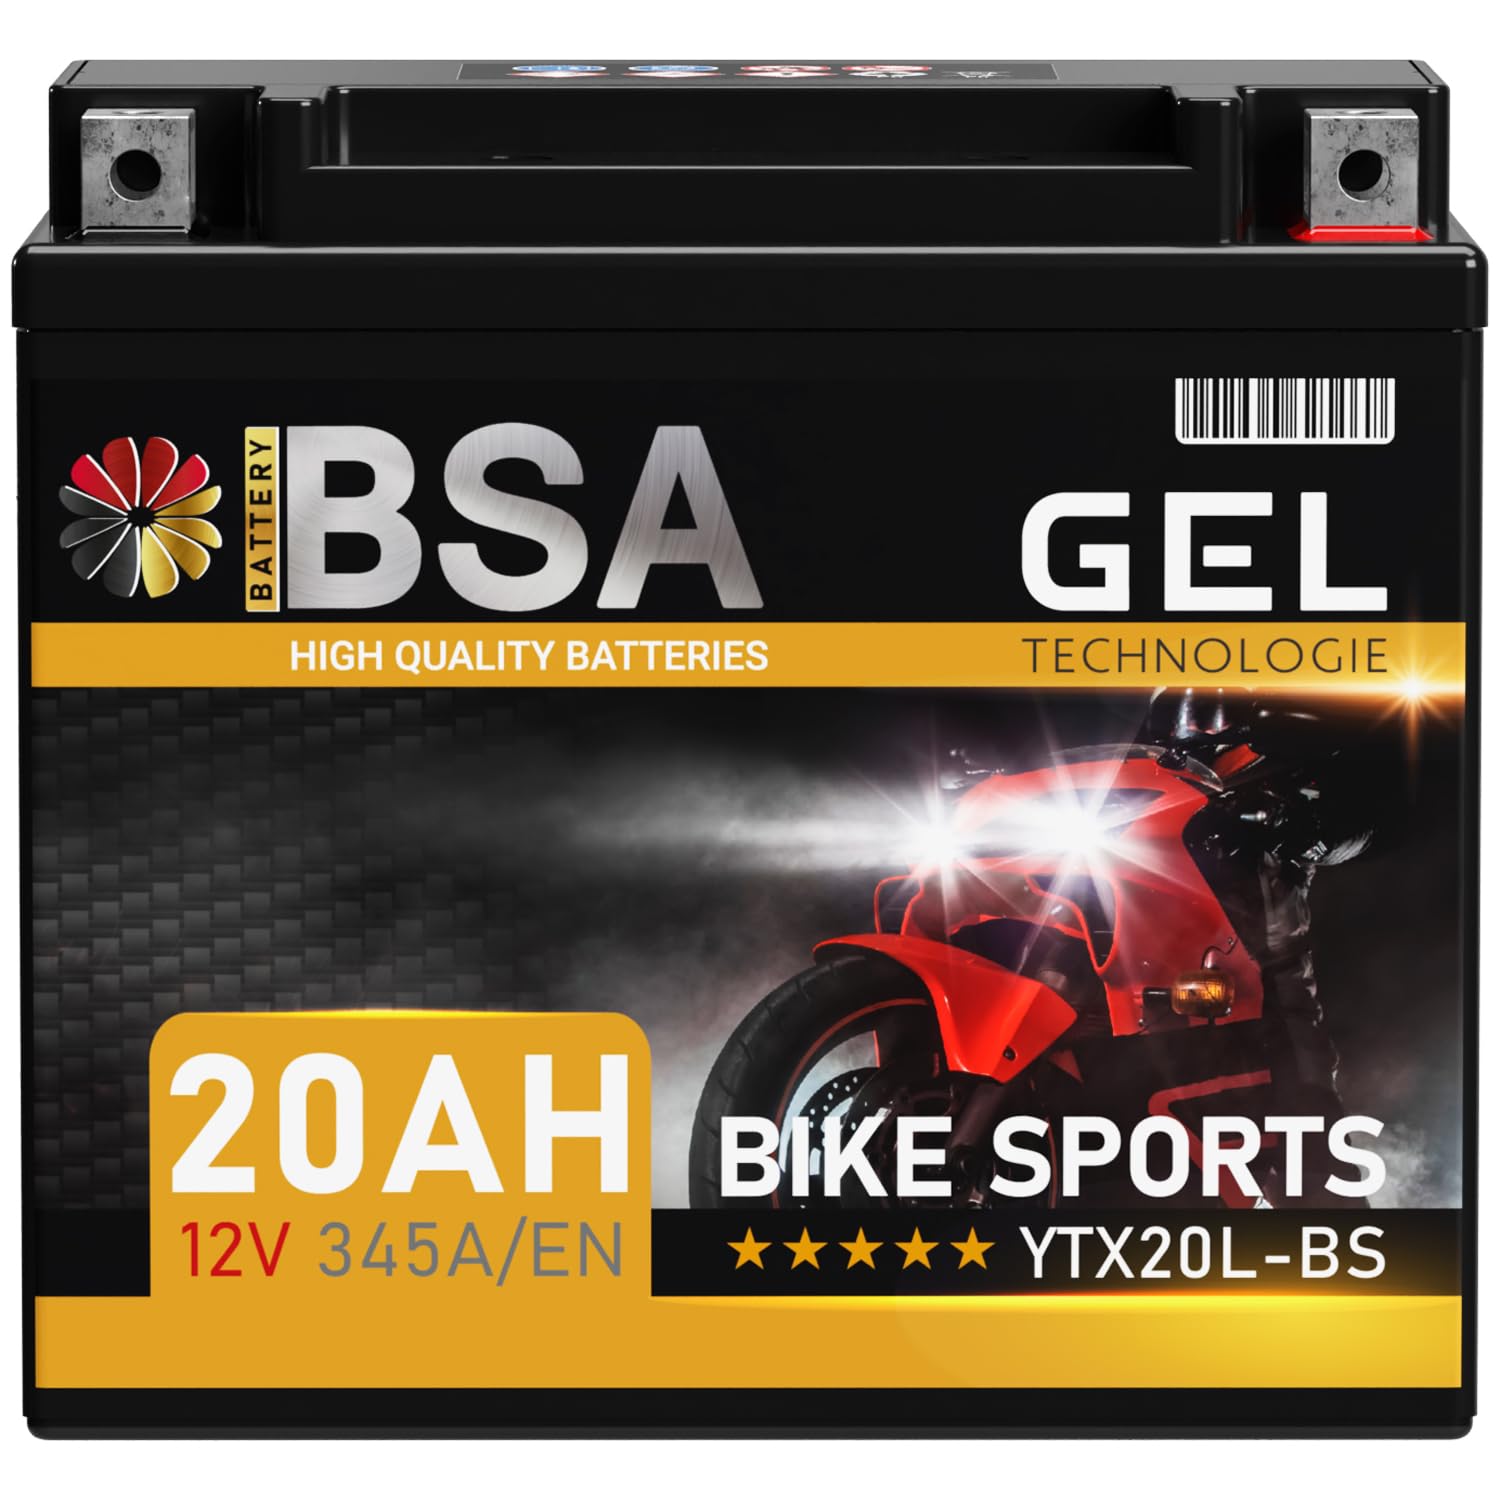 BSA YTX20L-BS GEL Roller Batterie 12V 20Ah 345A/EN Motorradbatterie doppelte Lebensdauer entspricht 51821 GTX20L-BS CTX20L-BS vorgeladen auslaufsicher wartungsfrei von BSA BATTERY HIGH QUALITY BATTERIES